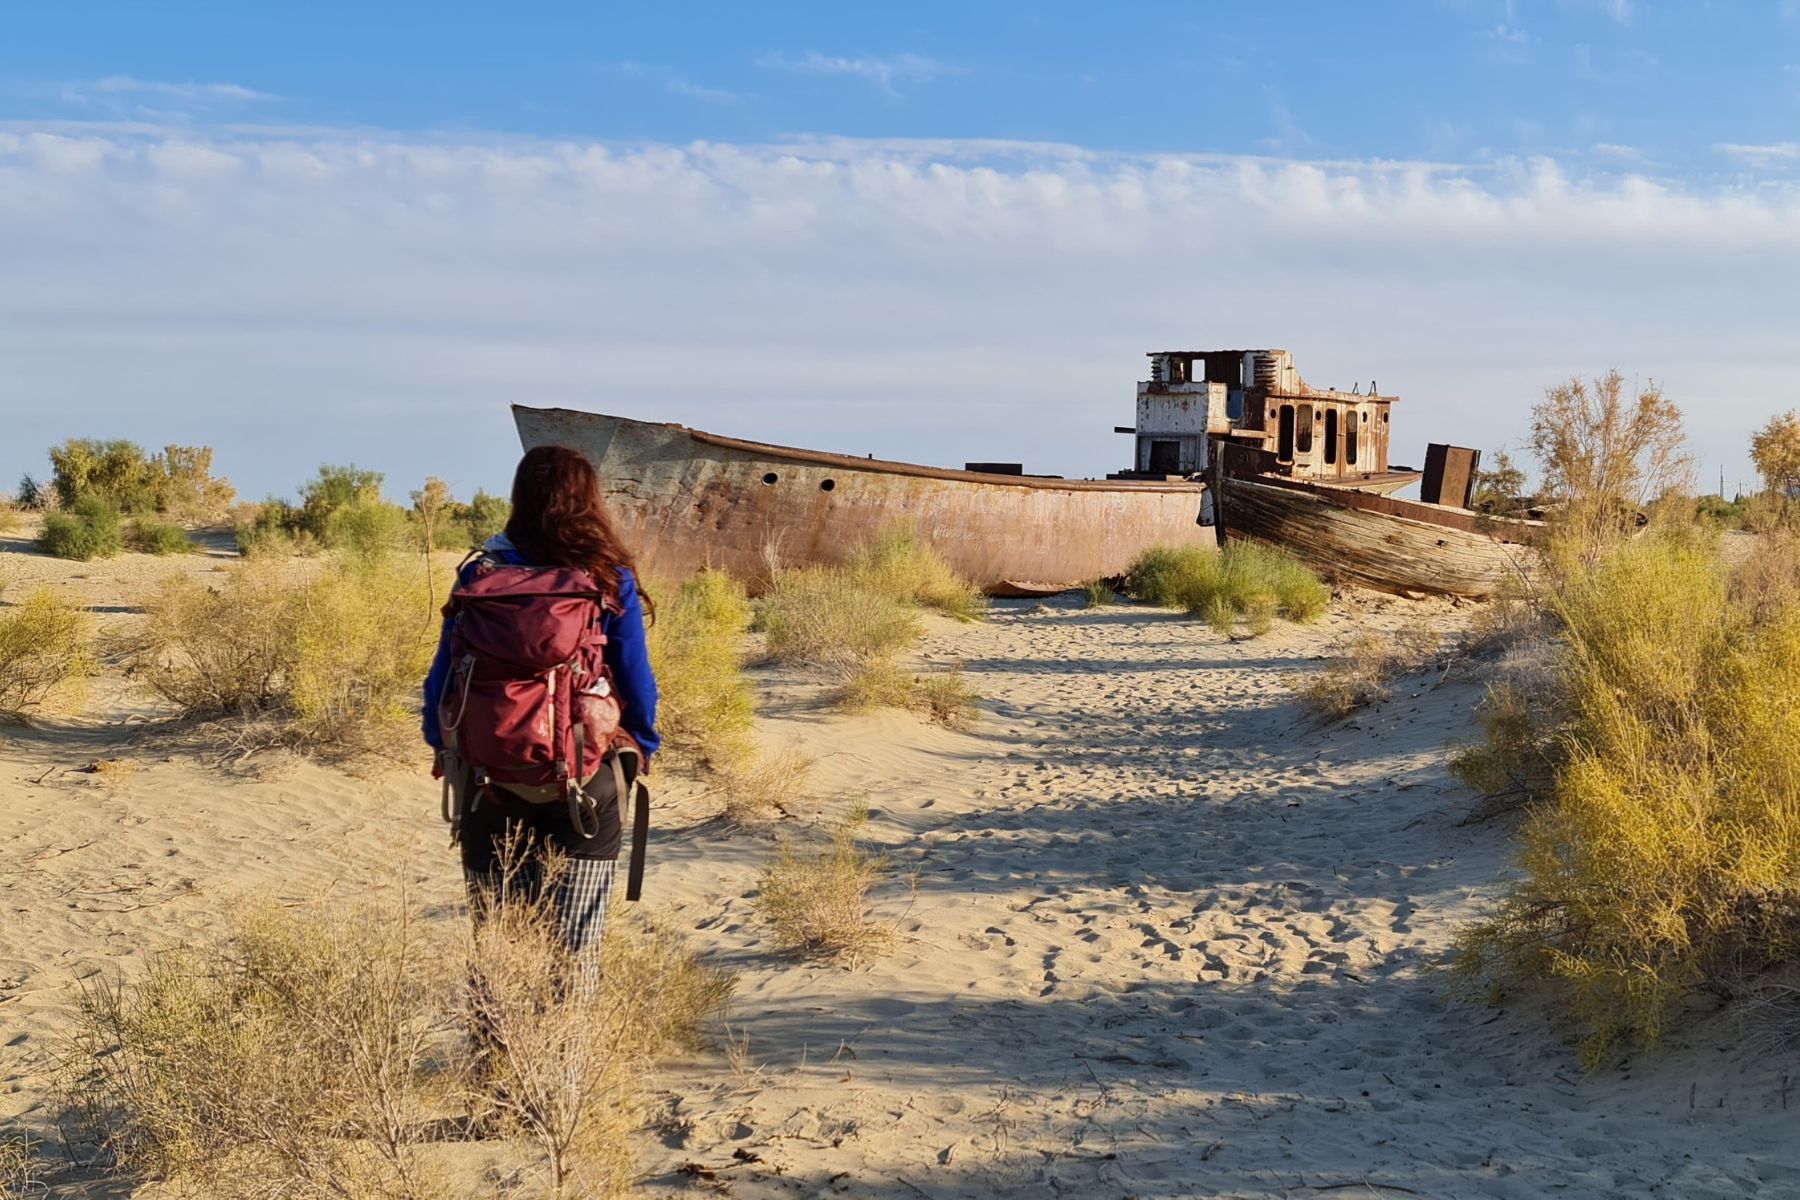 A woman approaching a shipwreck in the desert, Karakalpakstan